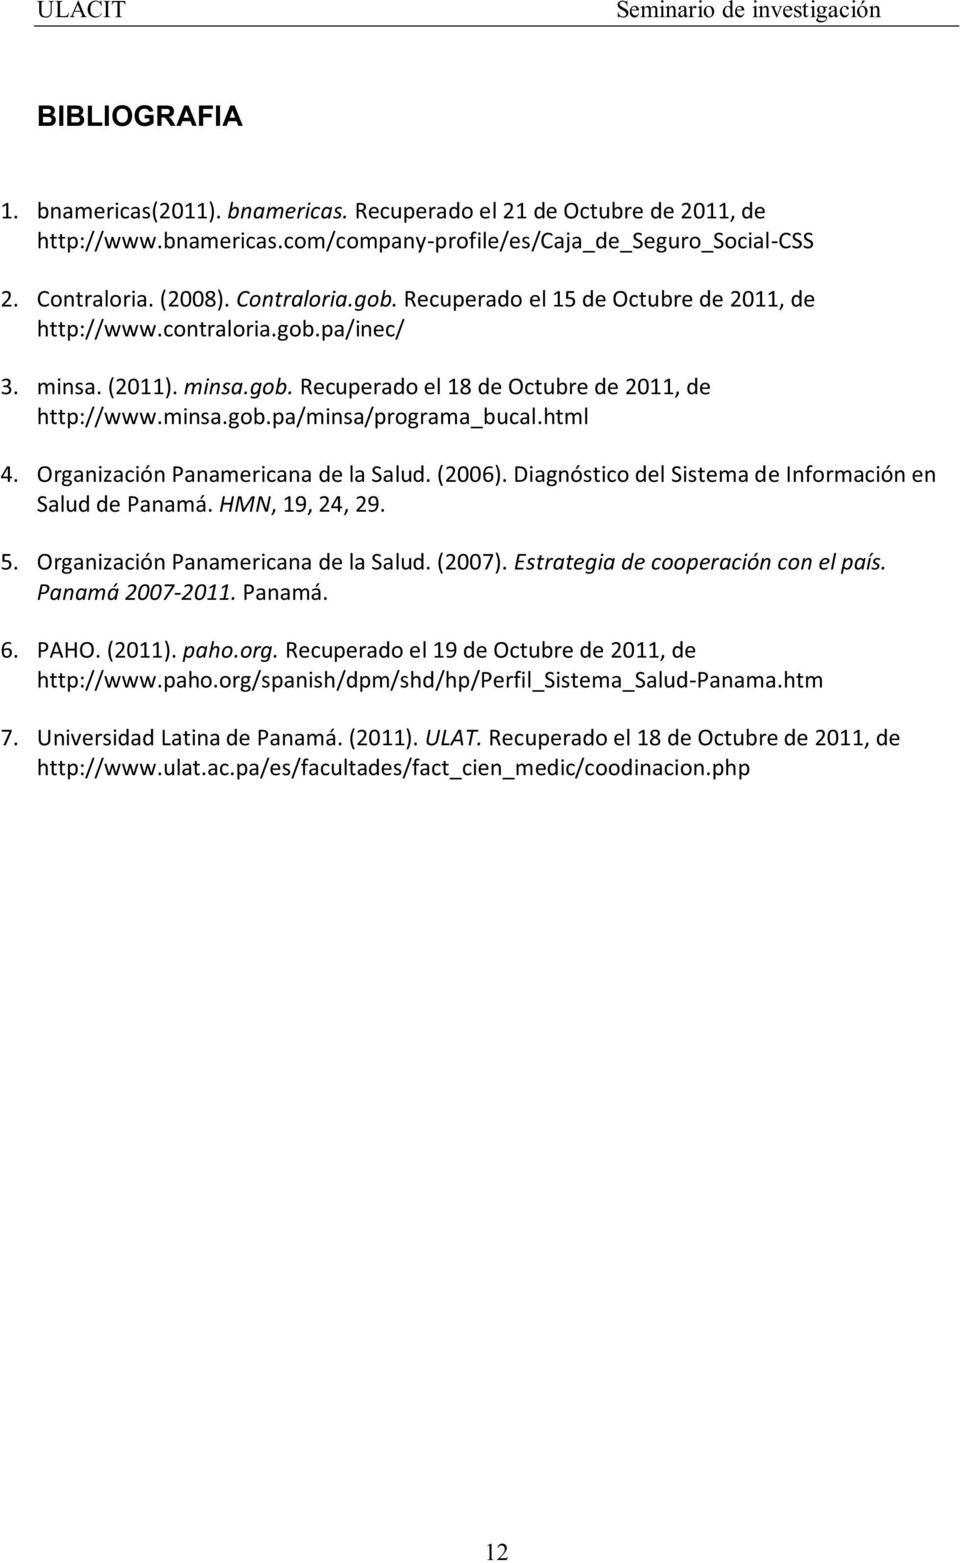 Organización Panamericana de la Salud. (006). Diagnóstico del Sistema de Información en Salud de Panamá. HMN, 9, 4, 9. 5. Organización Panamericana de la Salud. (007).